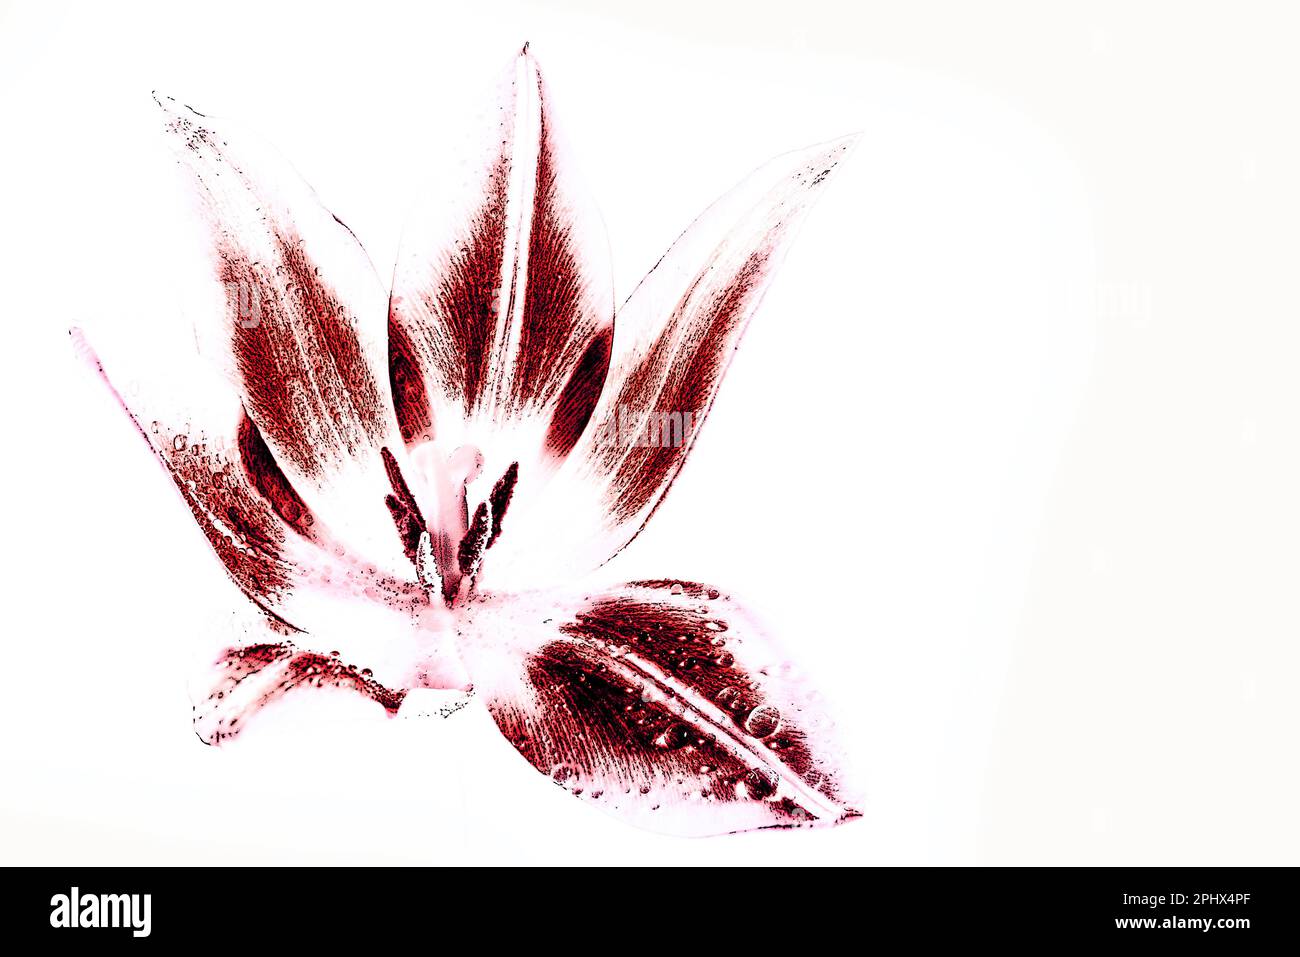 Fiore di tulipano rosso stilizzato con pistillo e stampino, illustrazione con effetto disegno, sfondo bianco, spazio copia Foto Stock